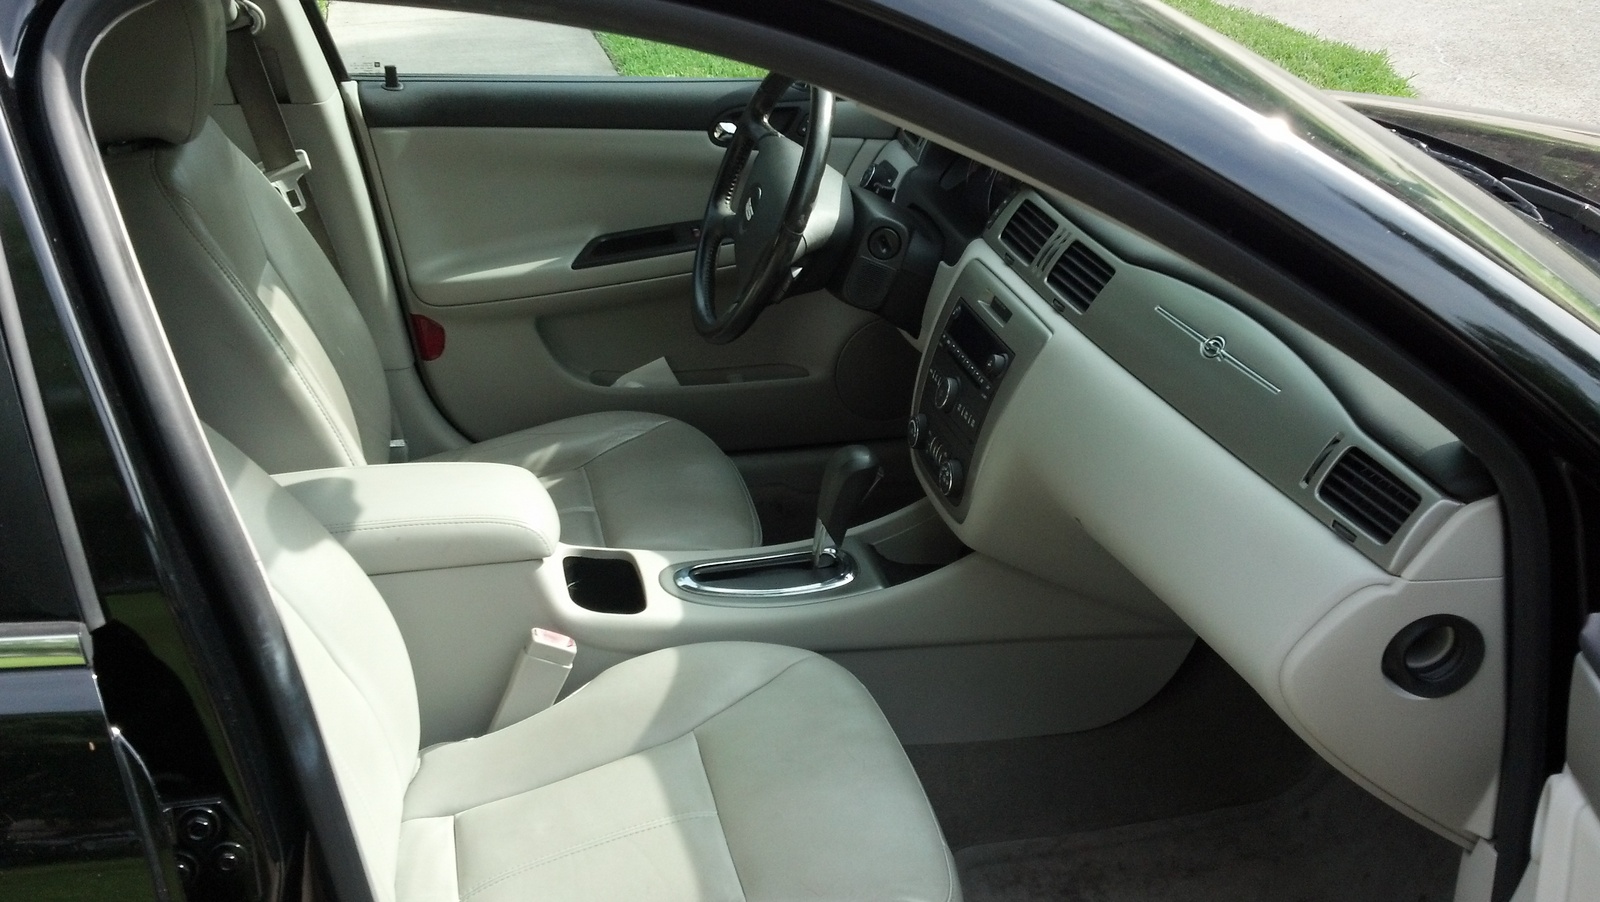 2007 Chevrolet Impala - Interior Pictures - CarGurus